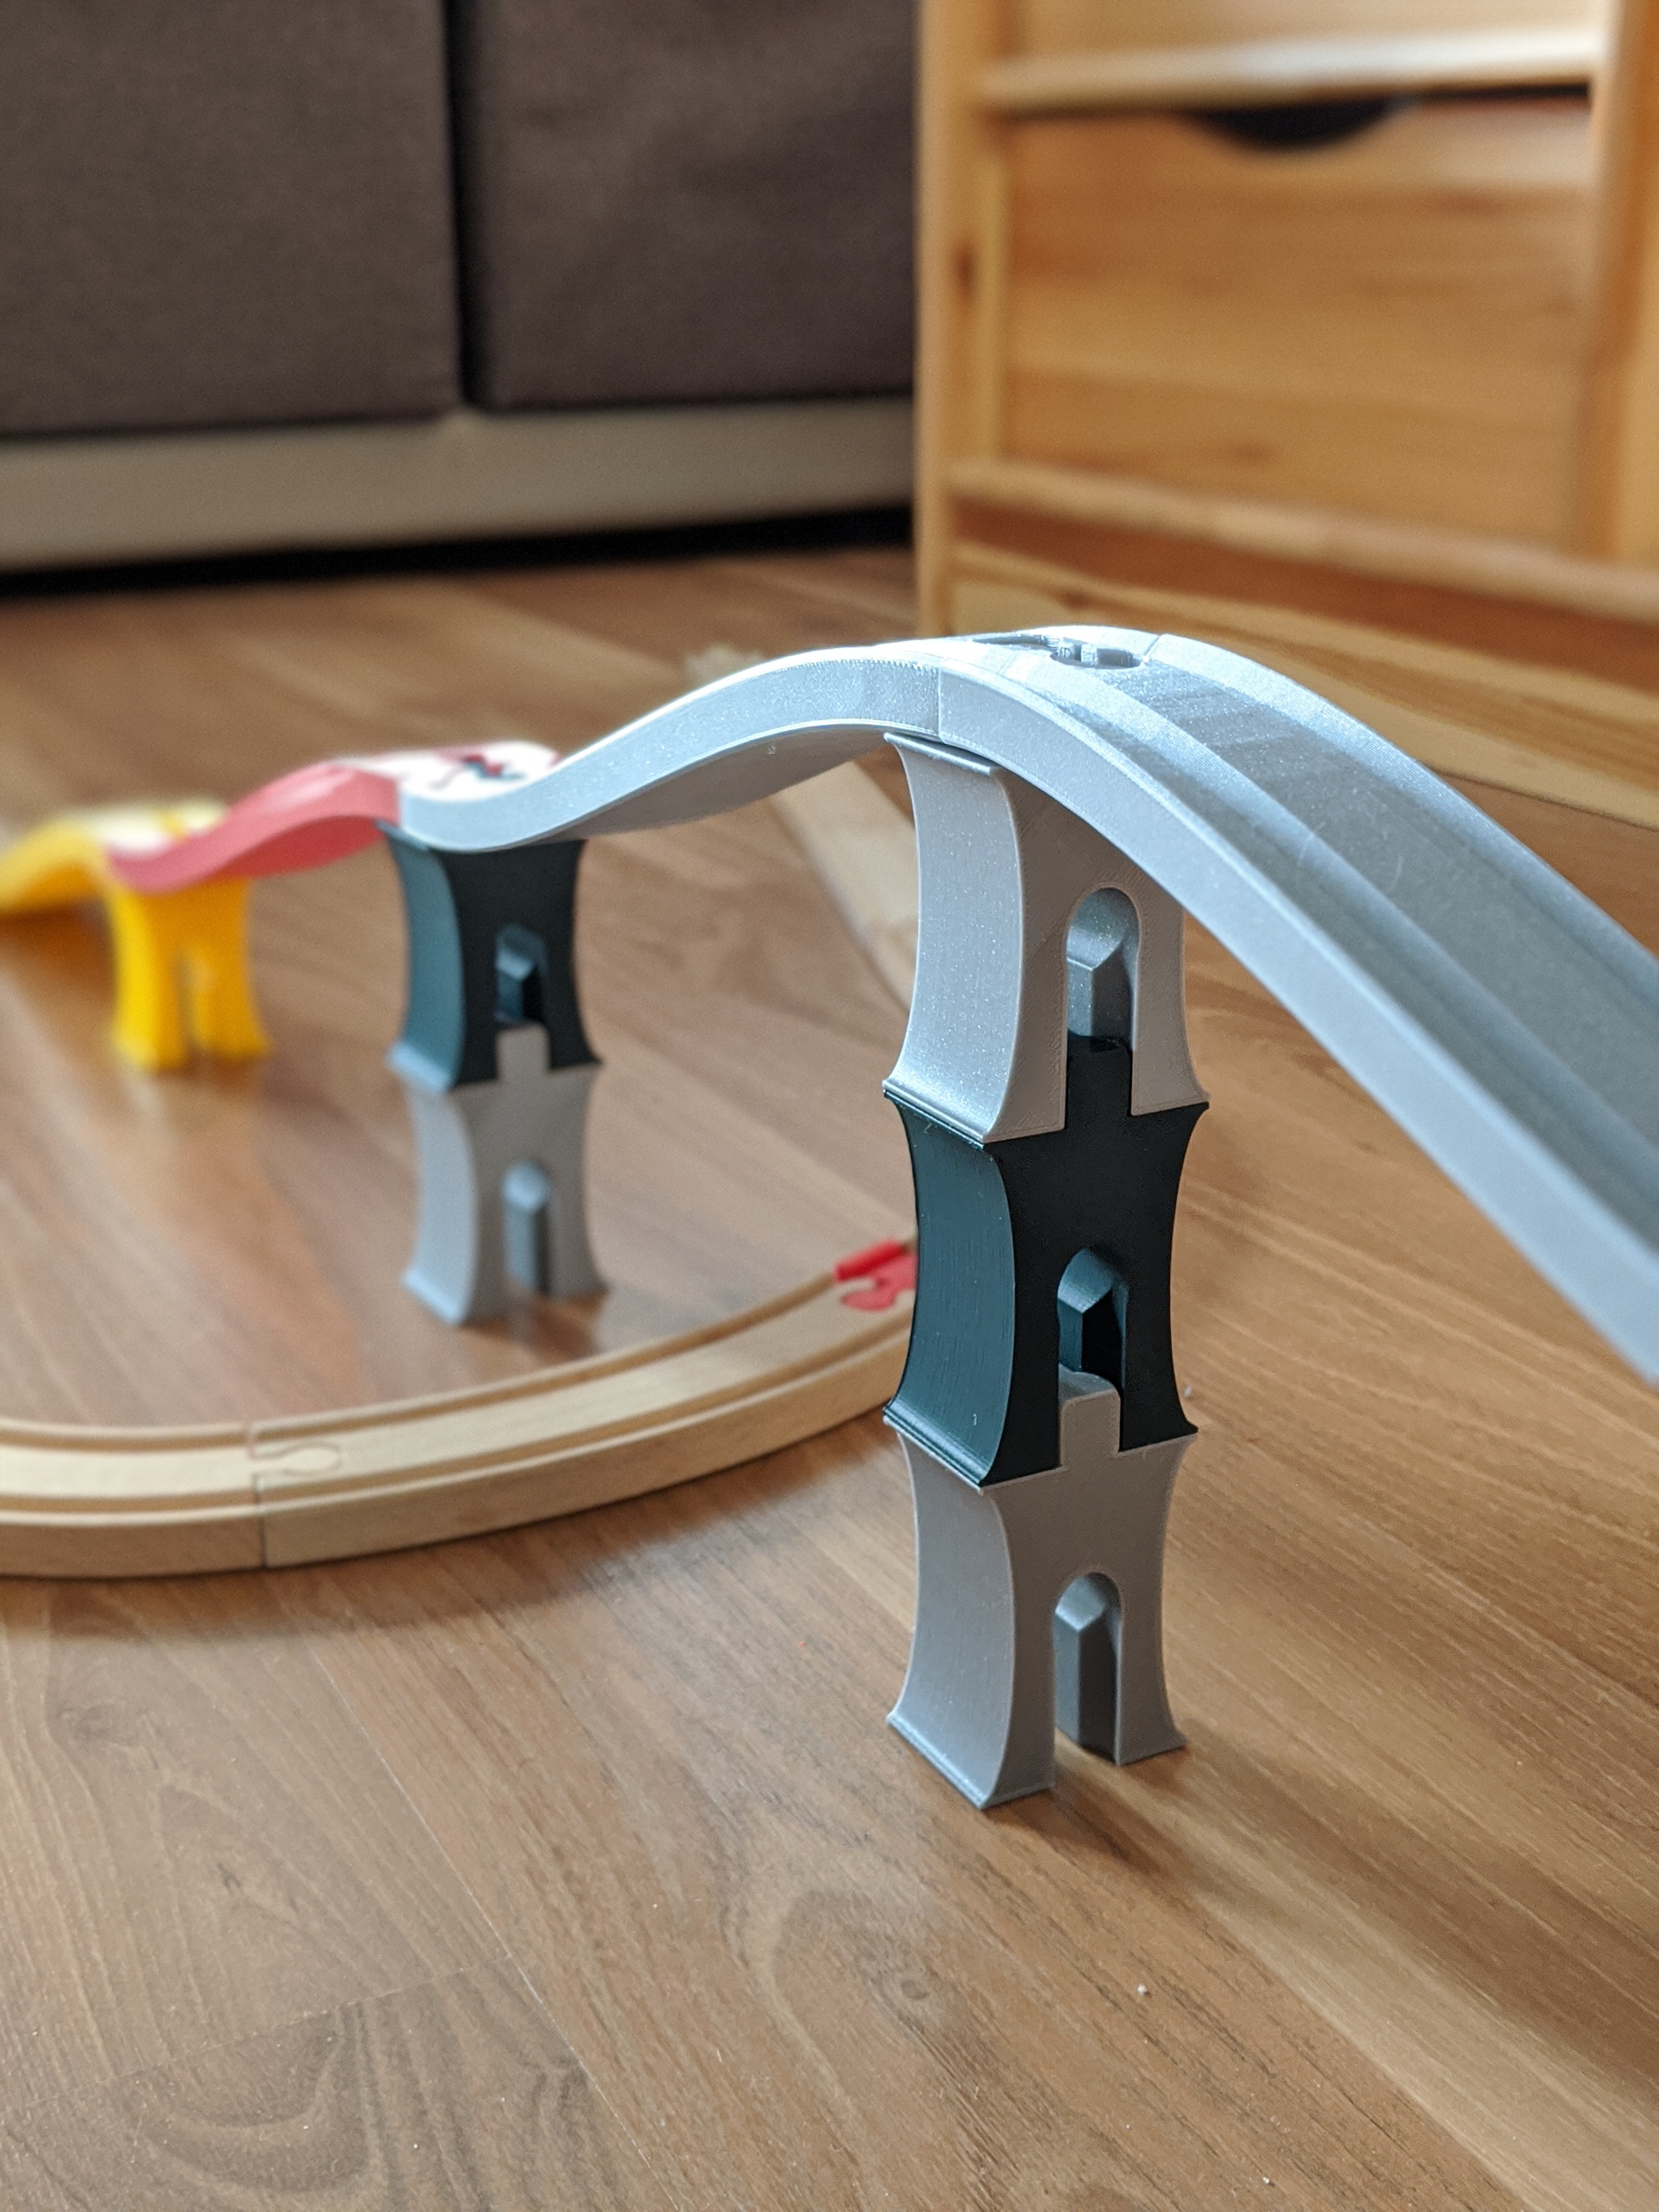 Bridge pillar for Ikea/Brio train track